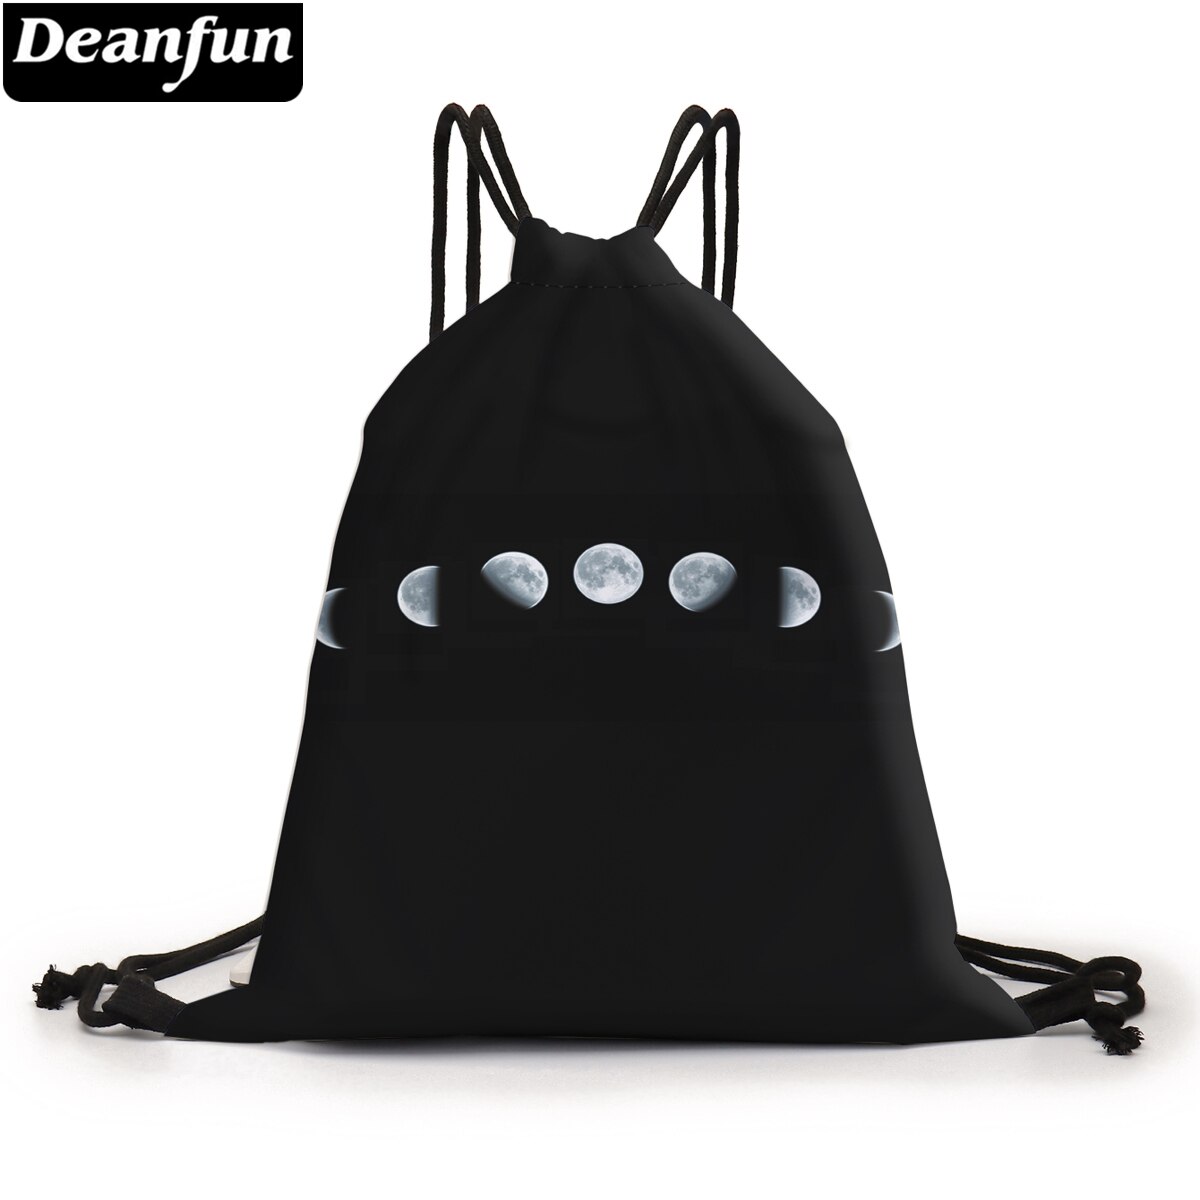 Deanfun Tasje Moon 3D Gedrukt Pouch Bag Black Koord Rugzak Voor Vrouwen D60440